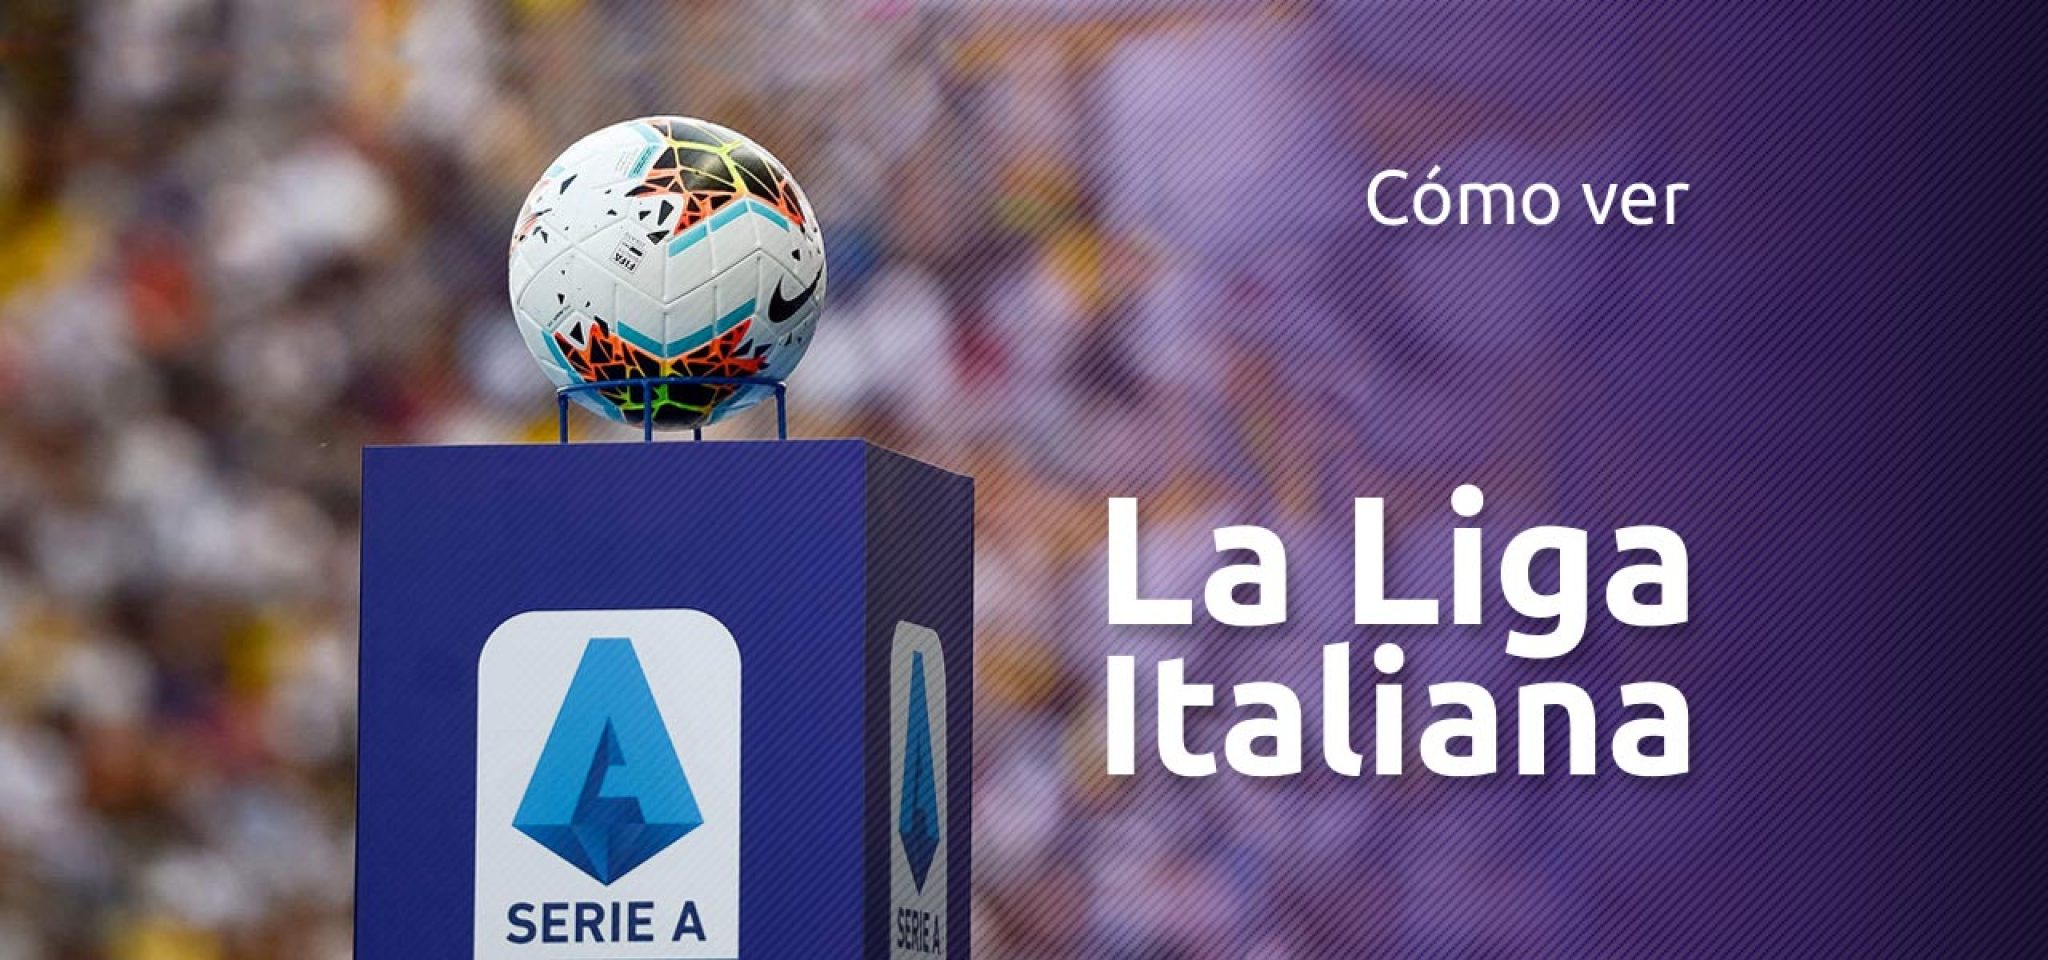 ¿Dónde ver la liga italiana en TV?